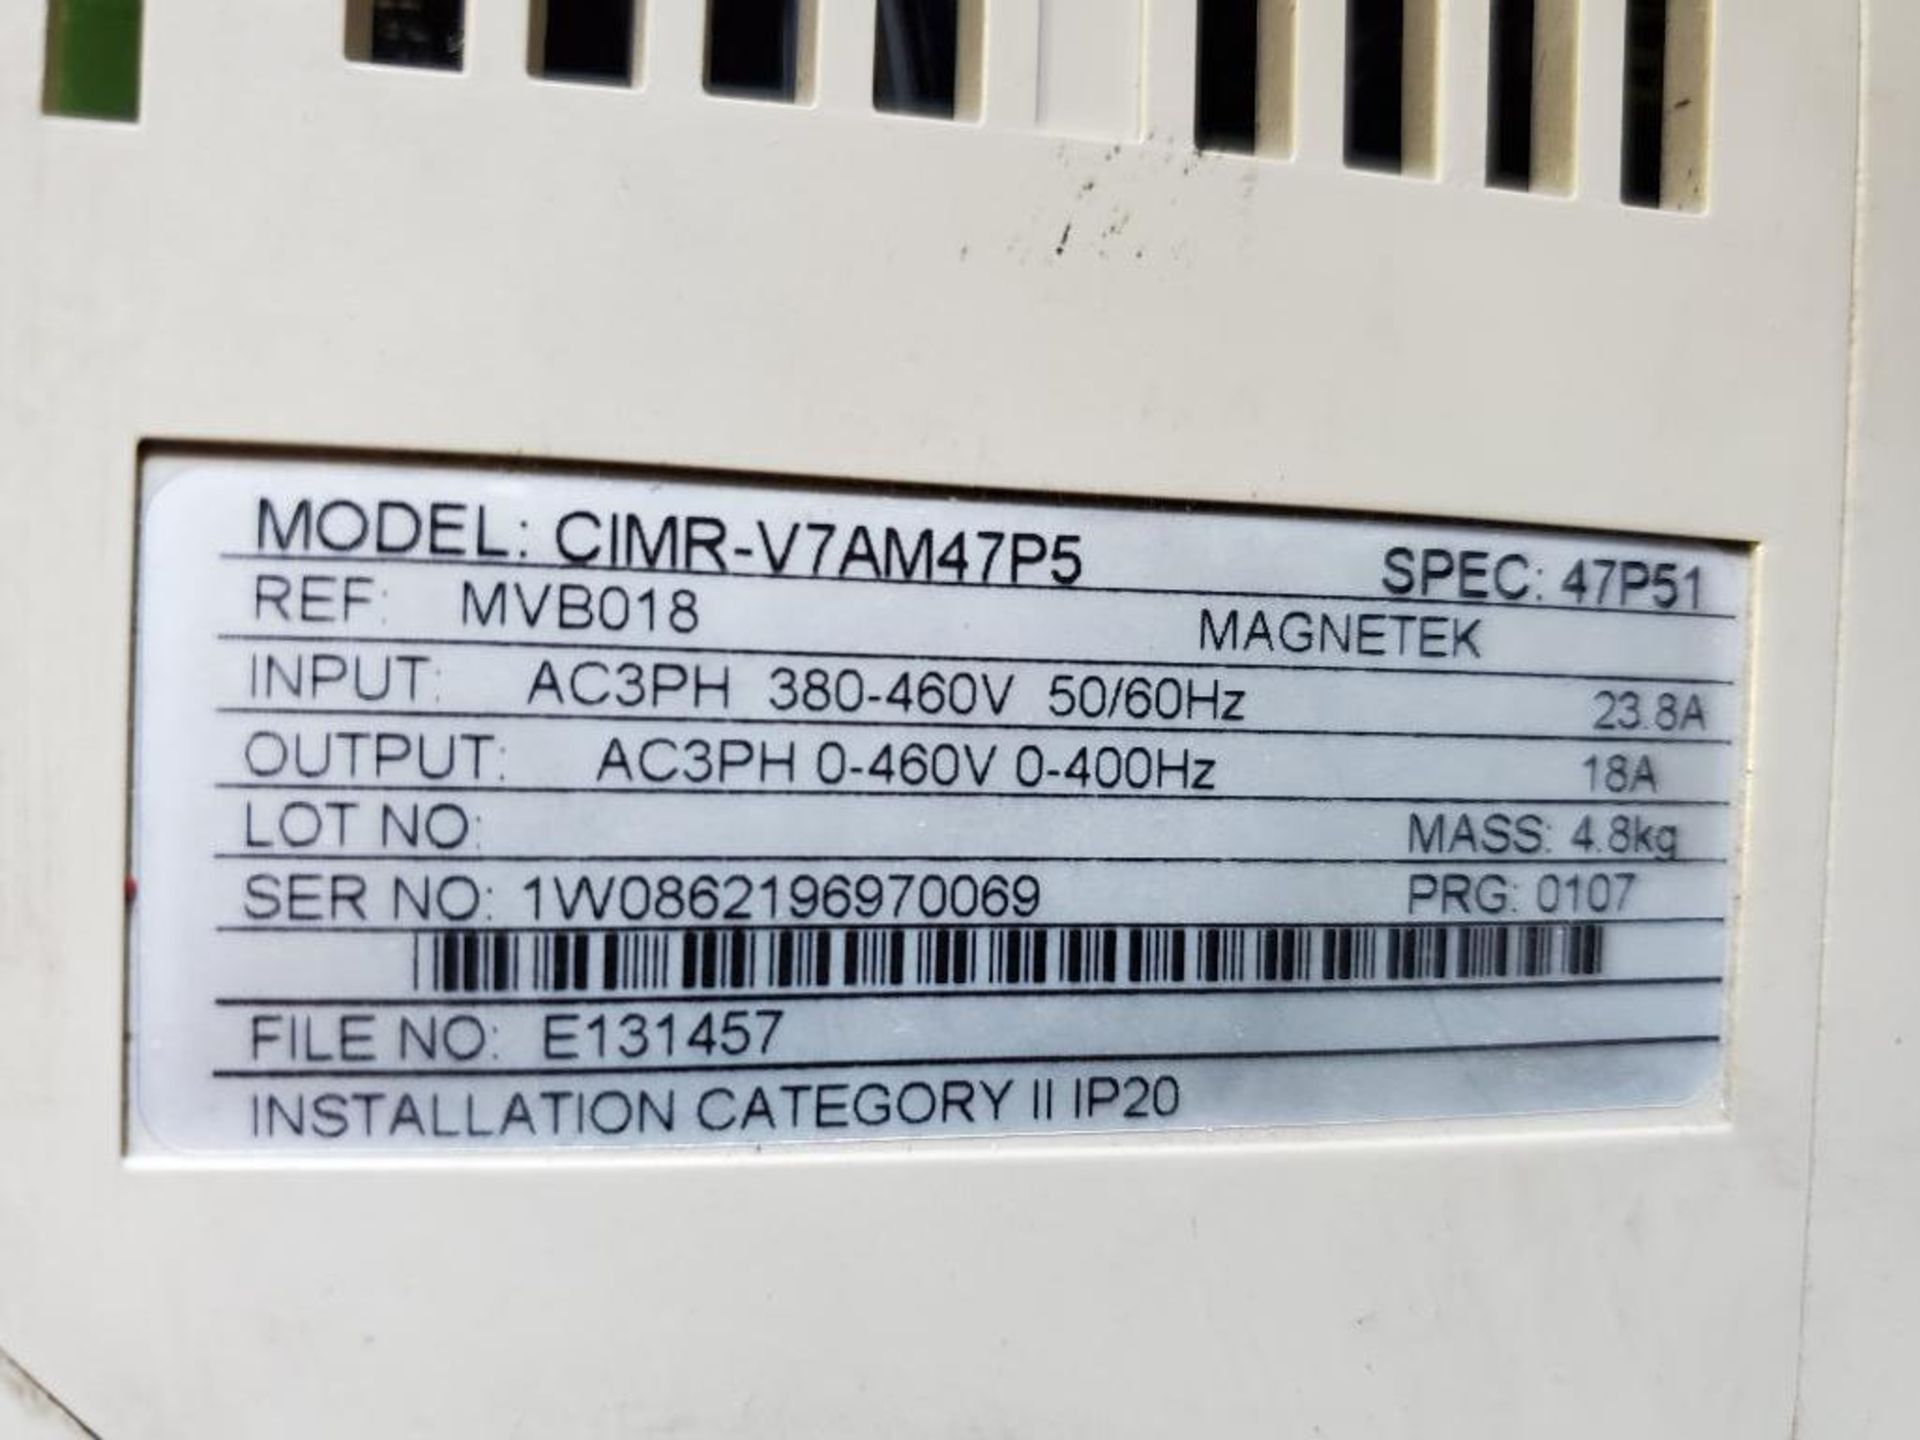 Magnetek MVB018 drive. CIMR-V7AM47P5. - Image 4 of 5